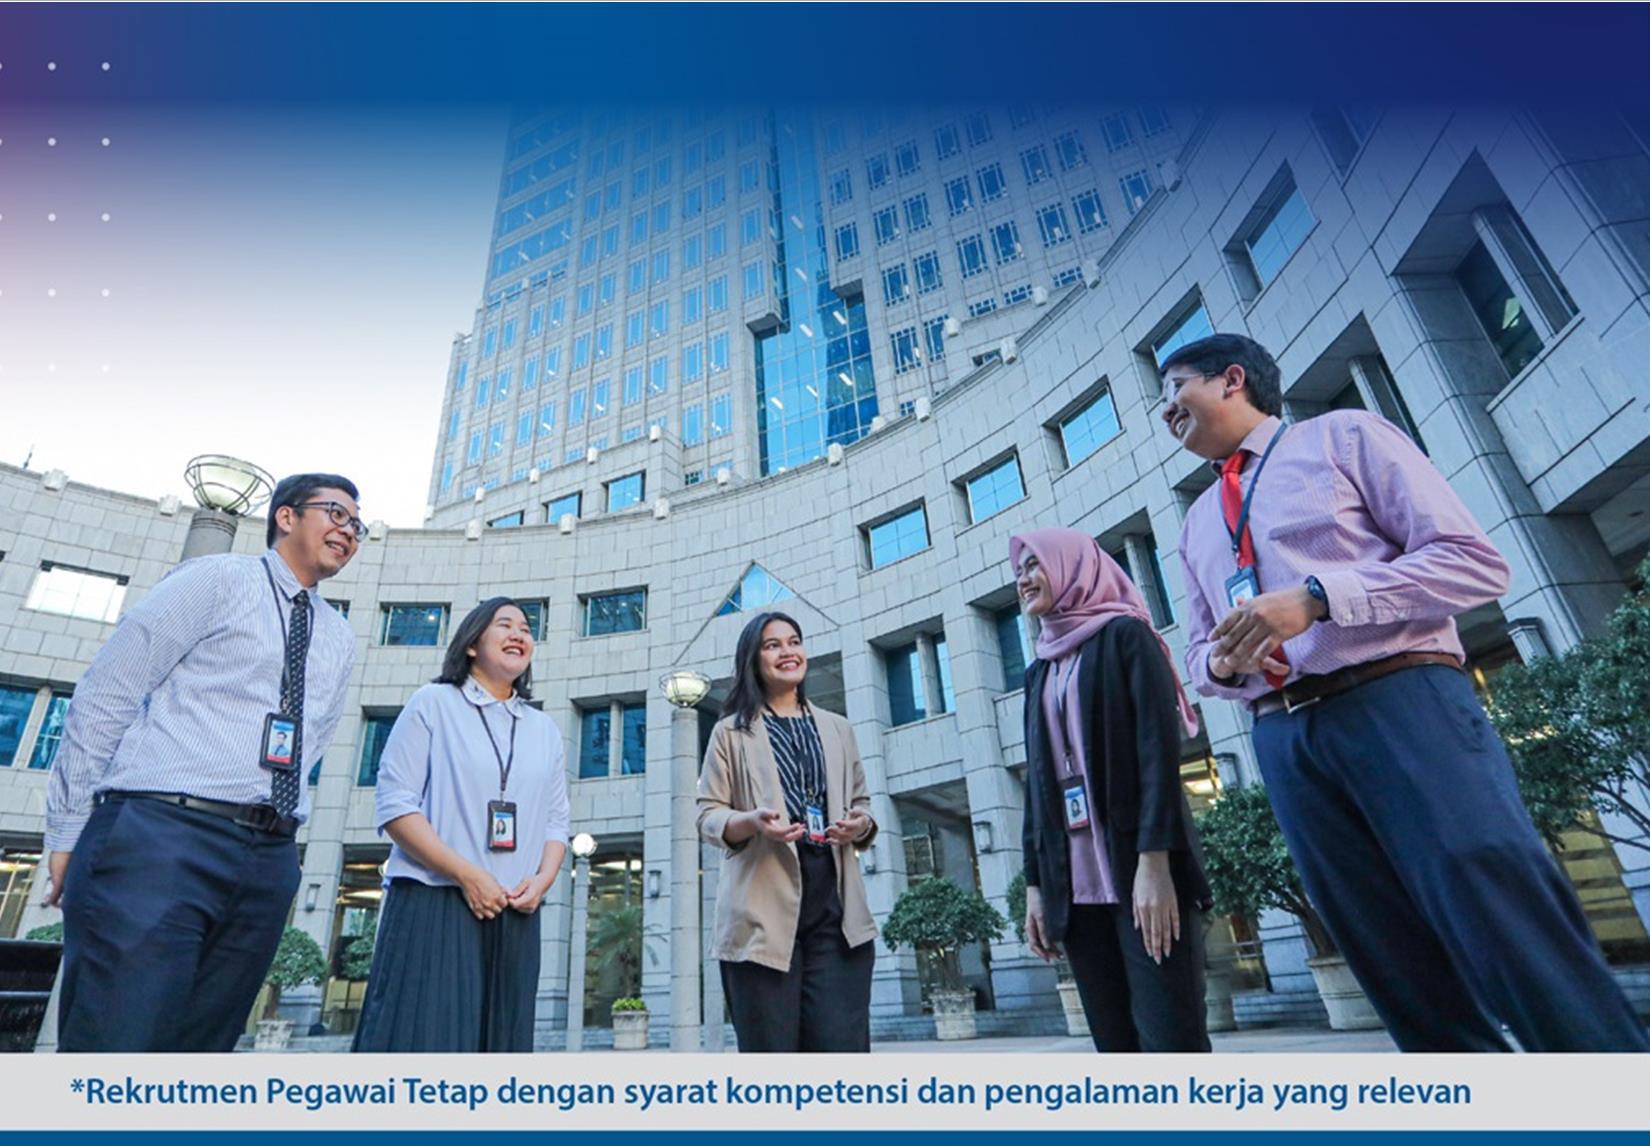 Bank Indonesia Buka Lowongan Kerja, Ini Syarat dan Link Pendaftarannya